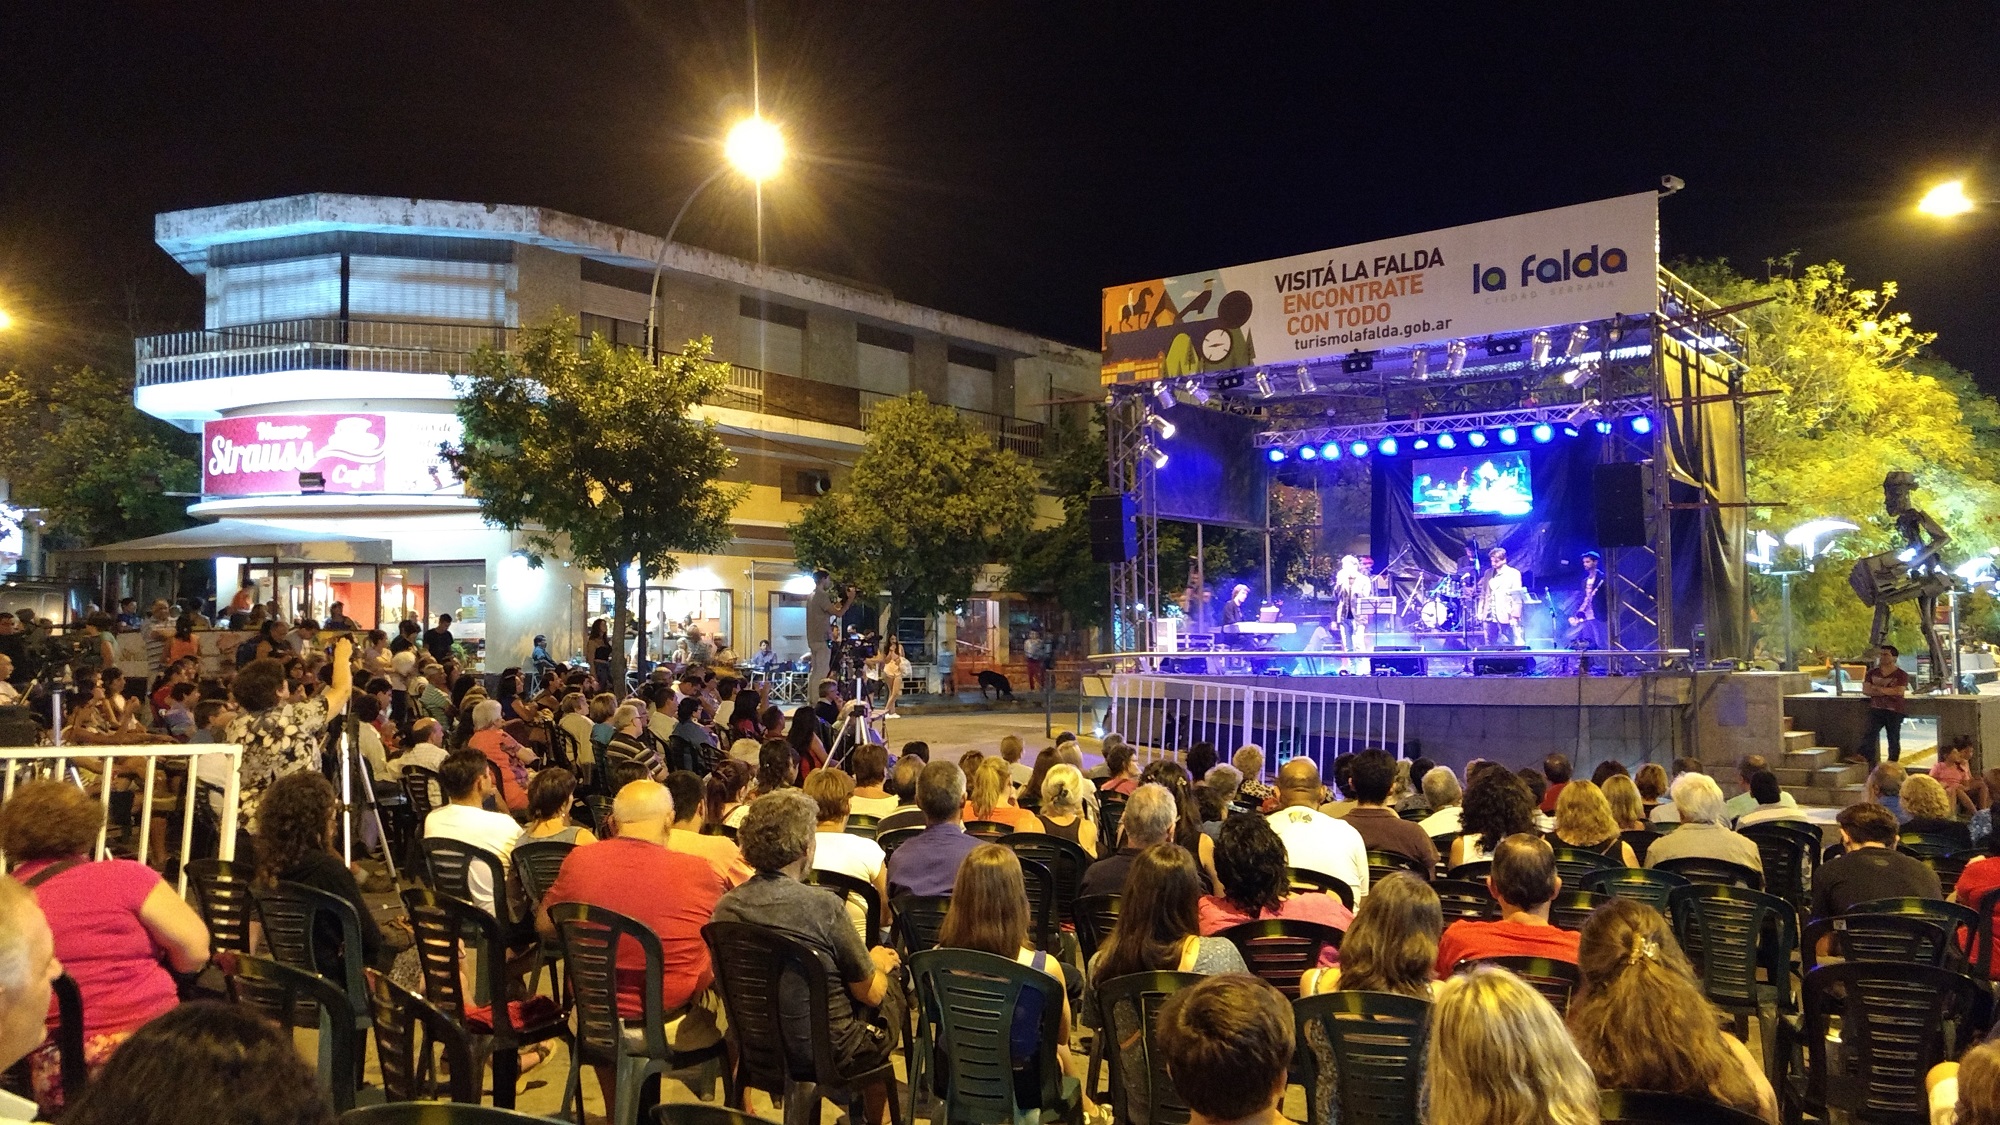 Grilla de actividades para disfrutar en La Falda este fin de semana –  Córdoba Turismo